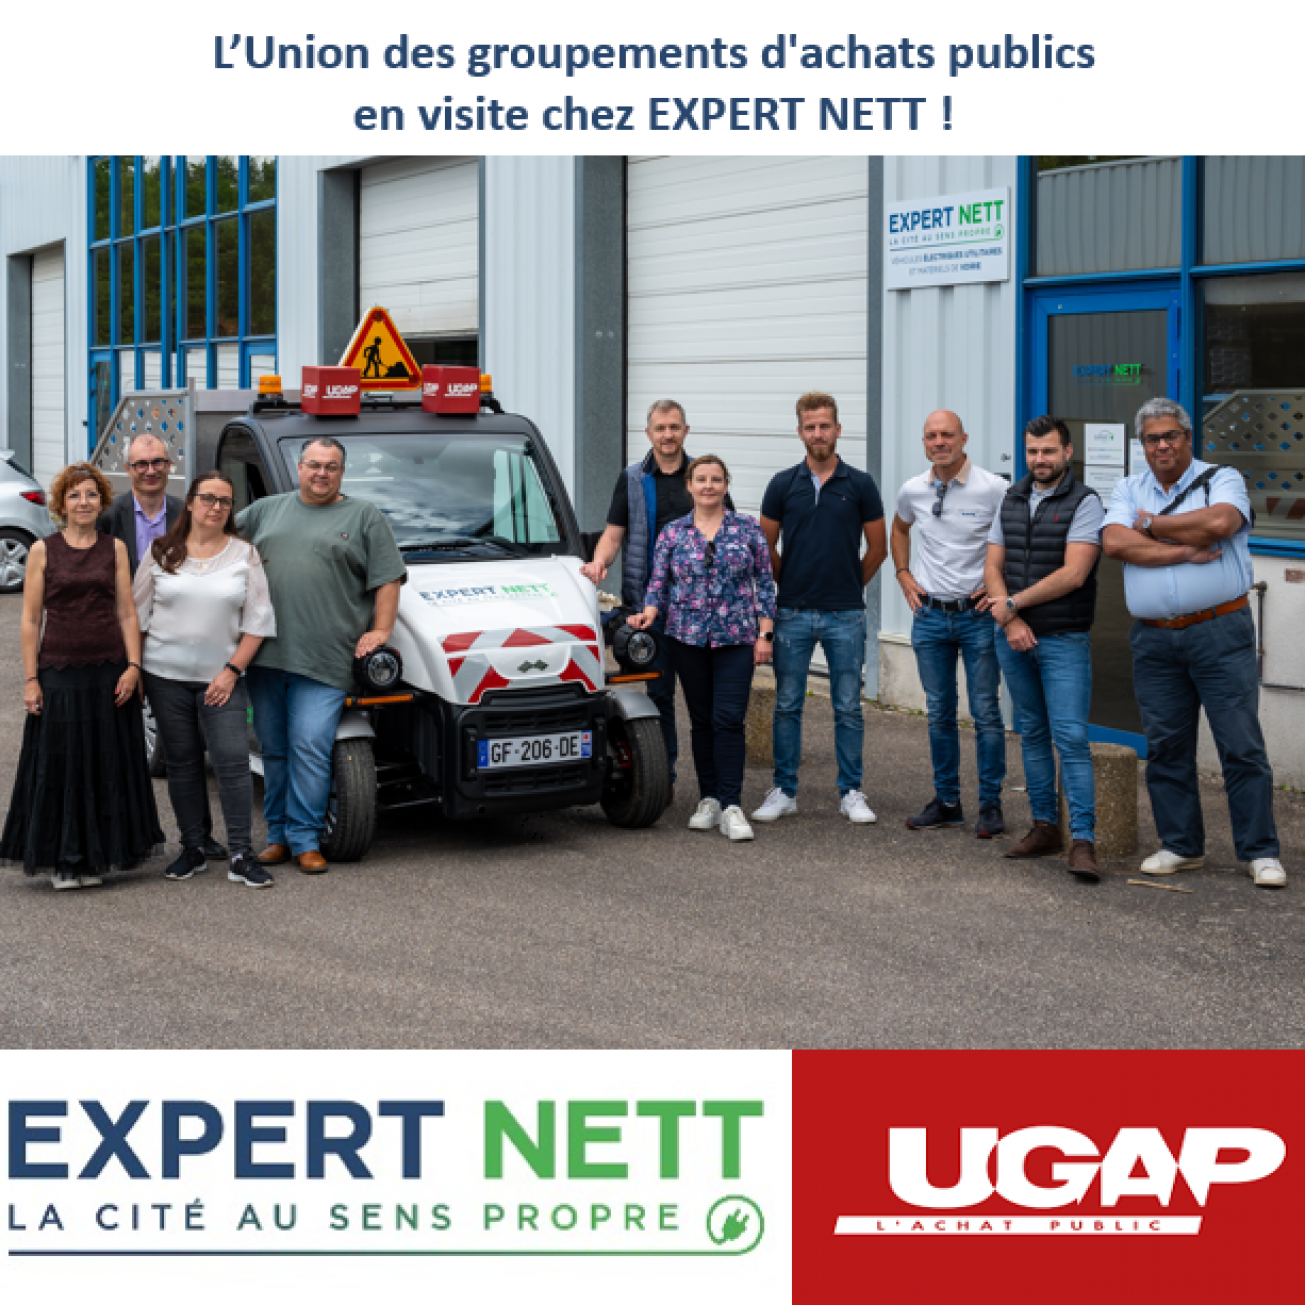 L’équipe commerciale de l’UGAP en visite chez Expert Nett